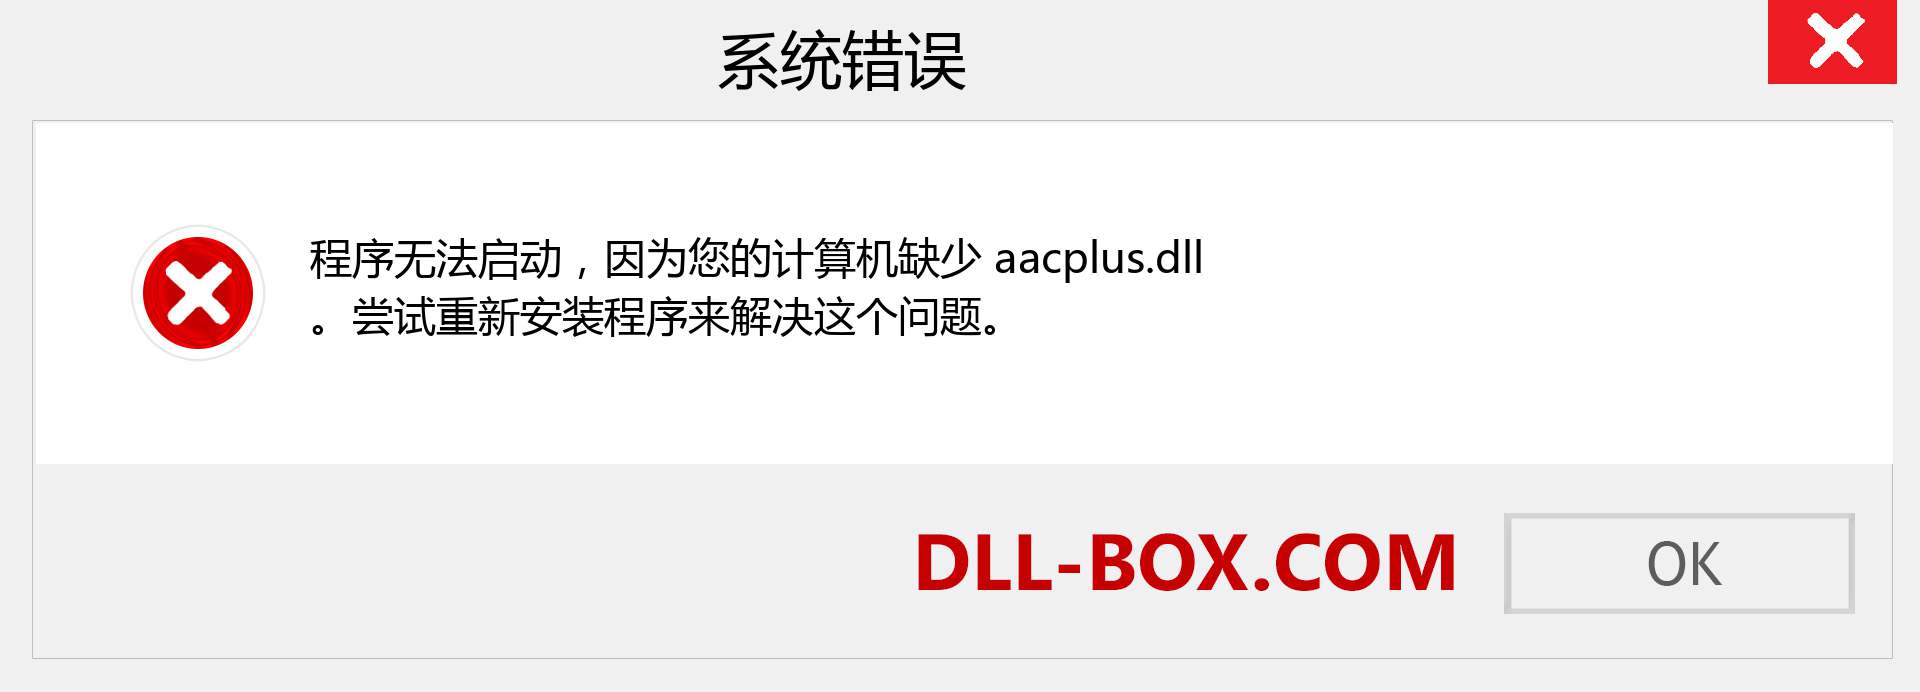 aacplus.dll 文件丢失？。 适用于 Windows 7、8、10 的下载 - 修复 Windows、照片、图像上的 aacplus dll 丢失错误